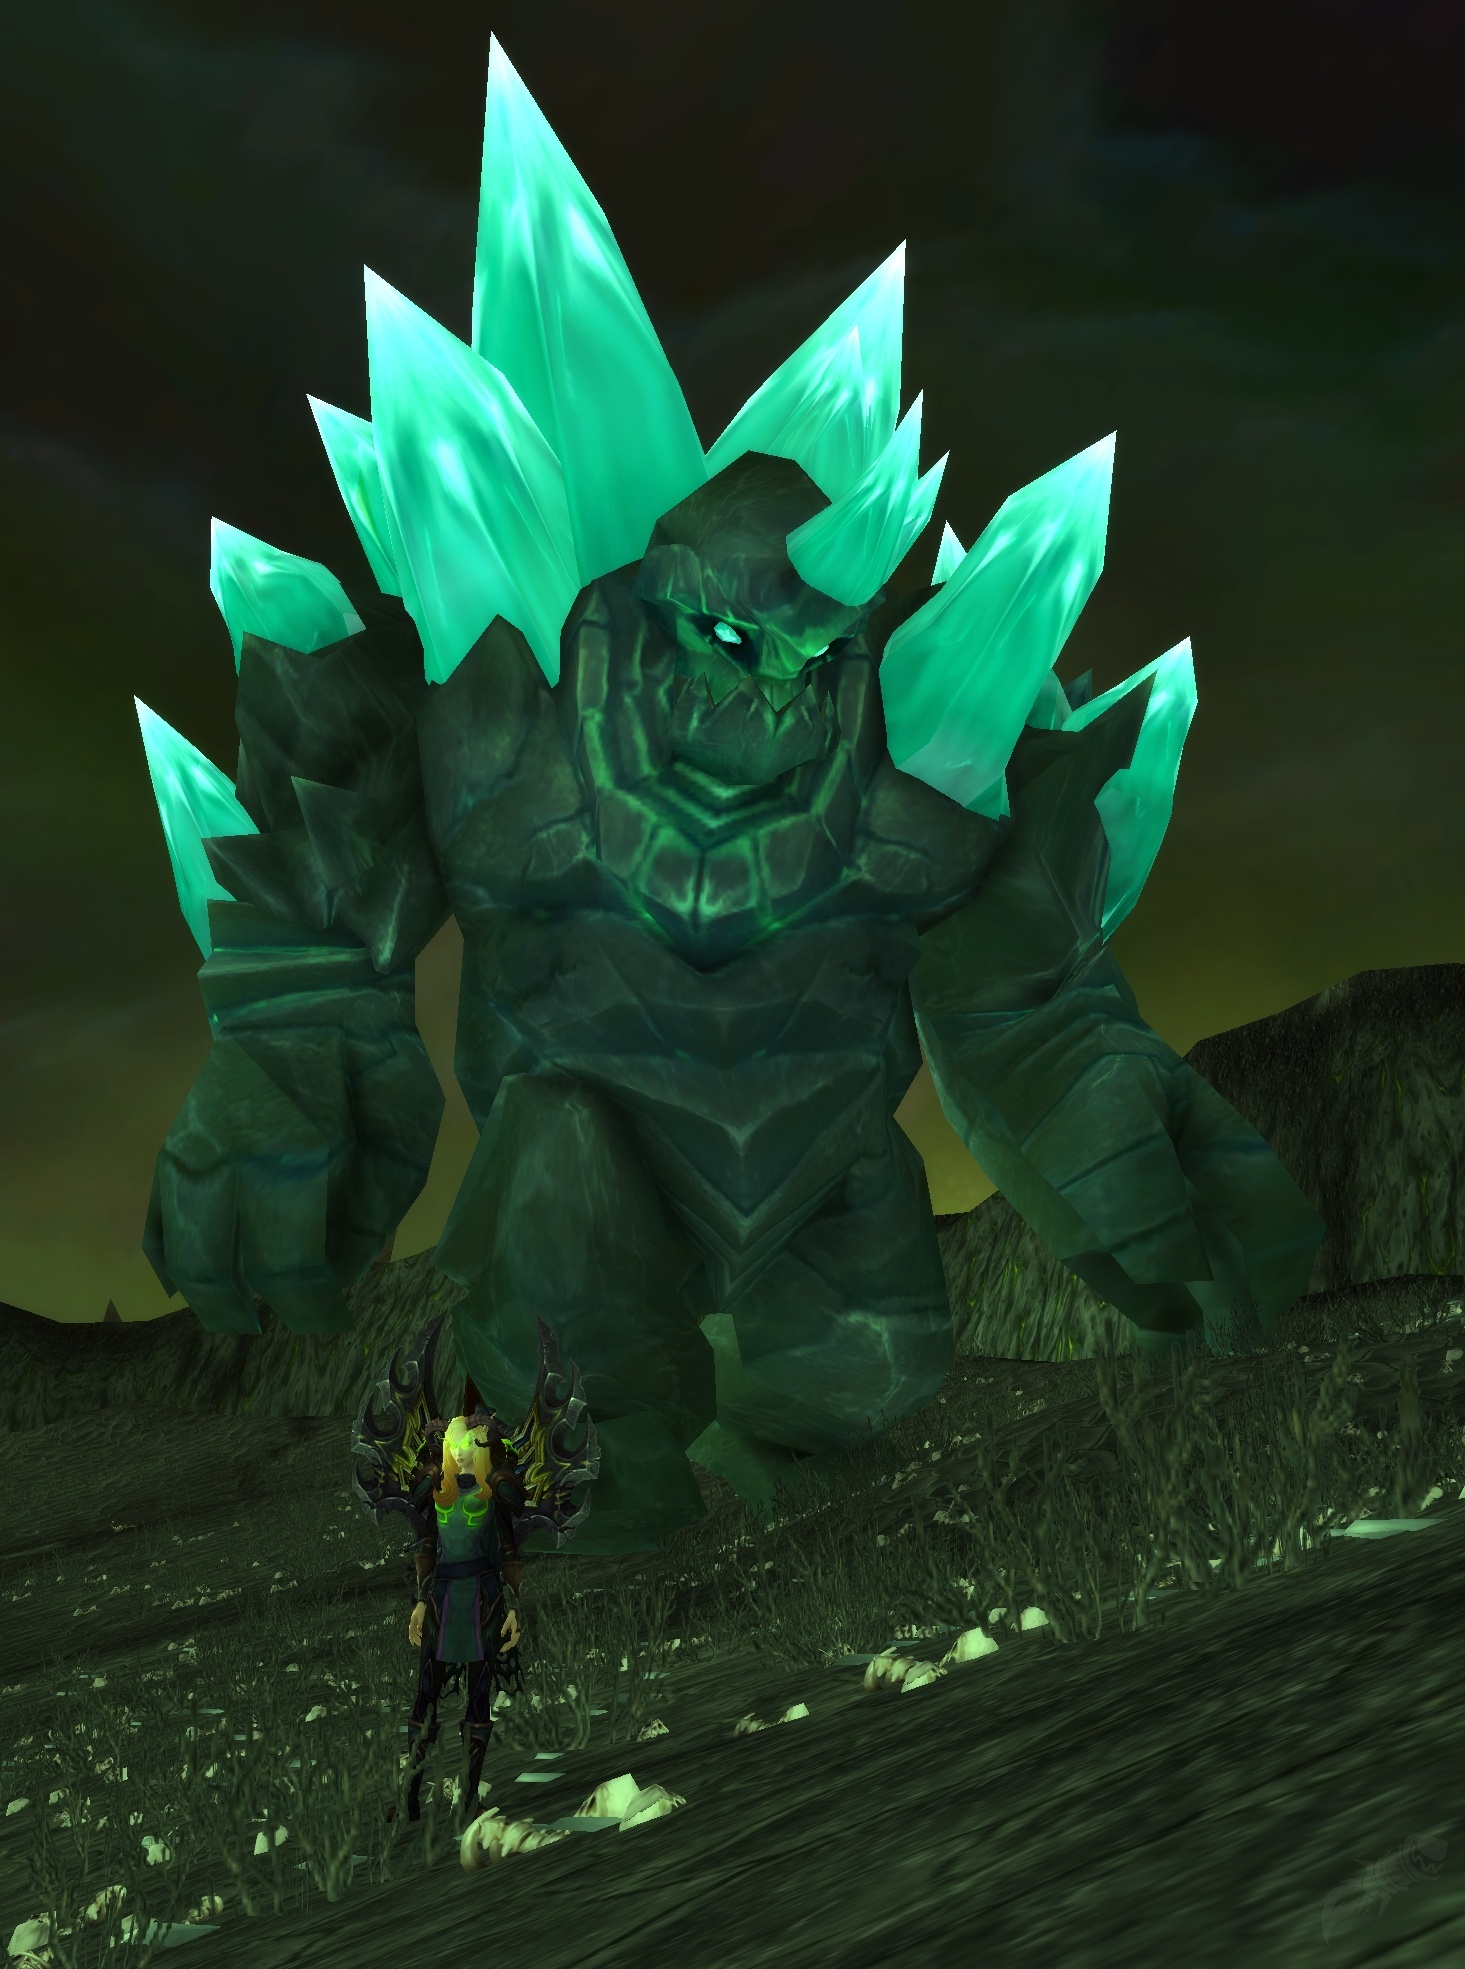 Combata fogo, água e ar com - Missão - World of Warcraft